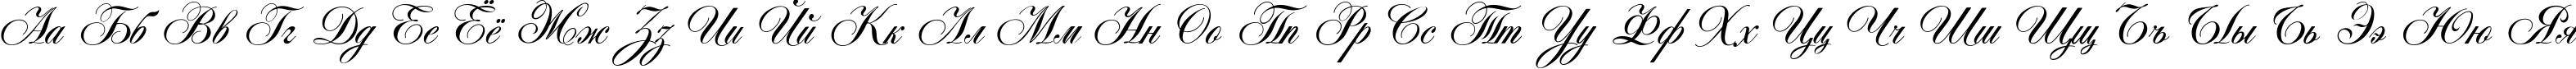 Пример написания русского алфавита шрифтом Antonella script